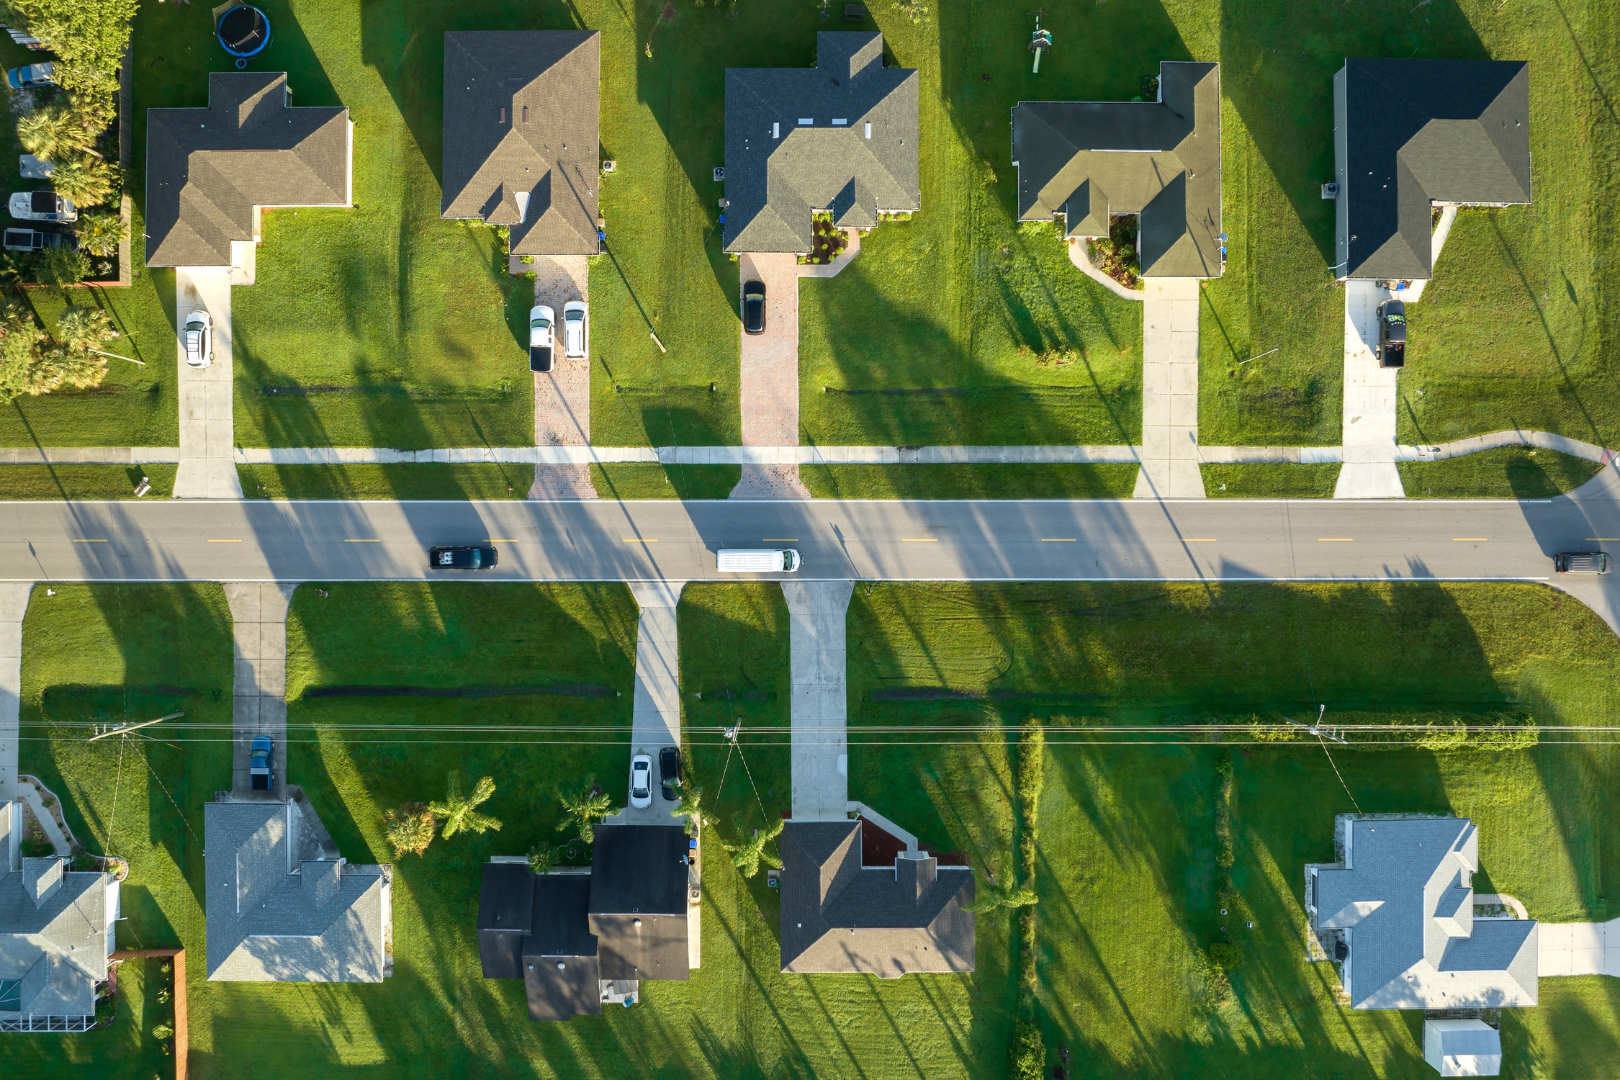 Mikedelprete analyse la tendance du marché immobilier américain